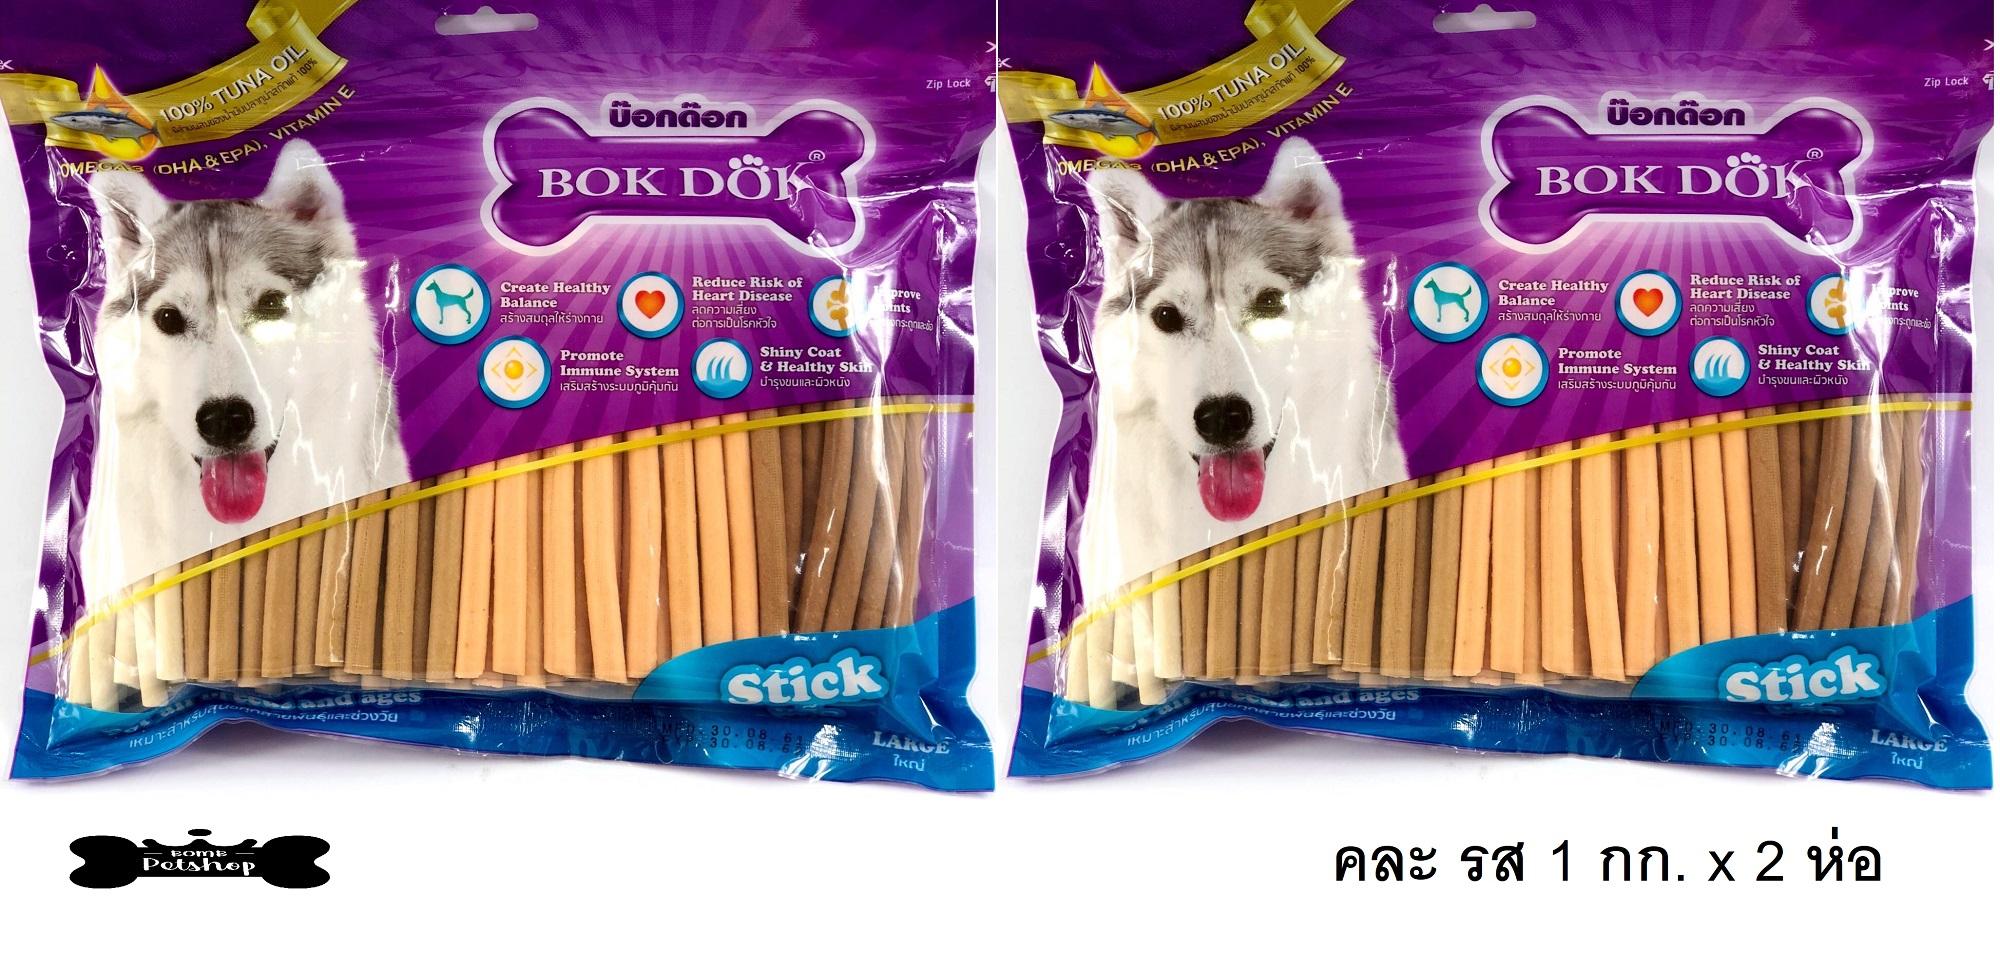 Bokdok Dog Stick บ็อกด๊อก ขนมสุนัข แบบแท่ง ชิกเก้นสติก ขนาด 5   รวมรส 1 kg x 2 ห่อ